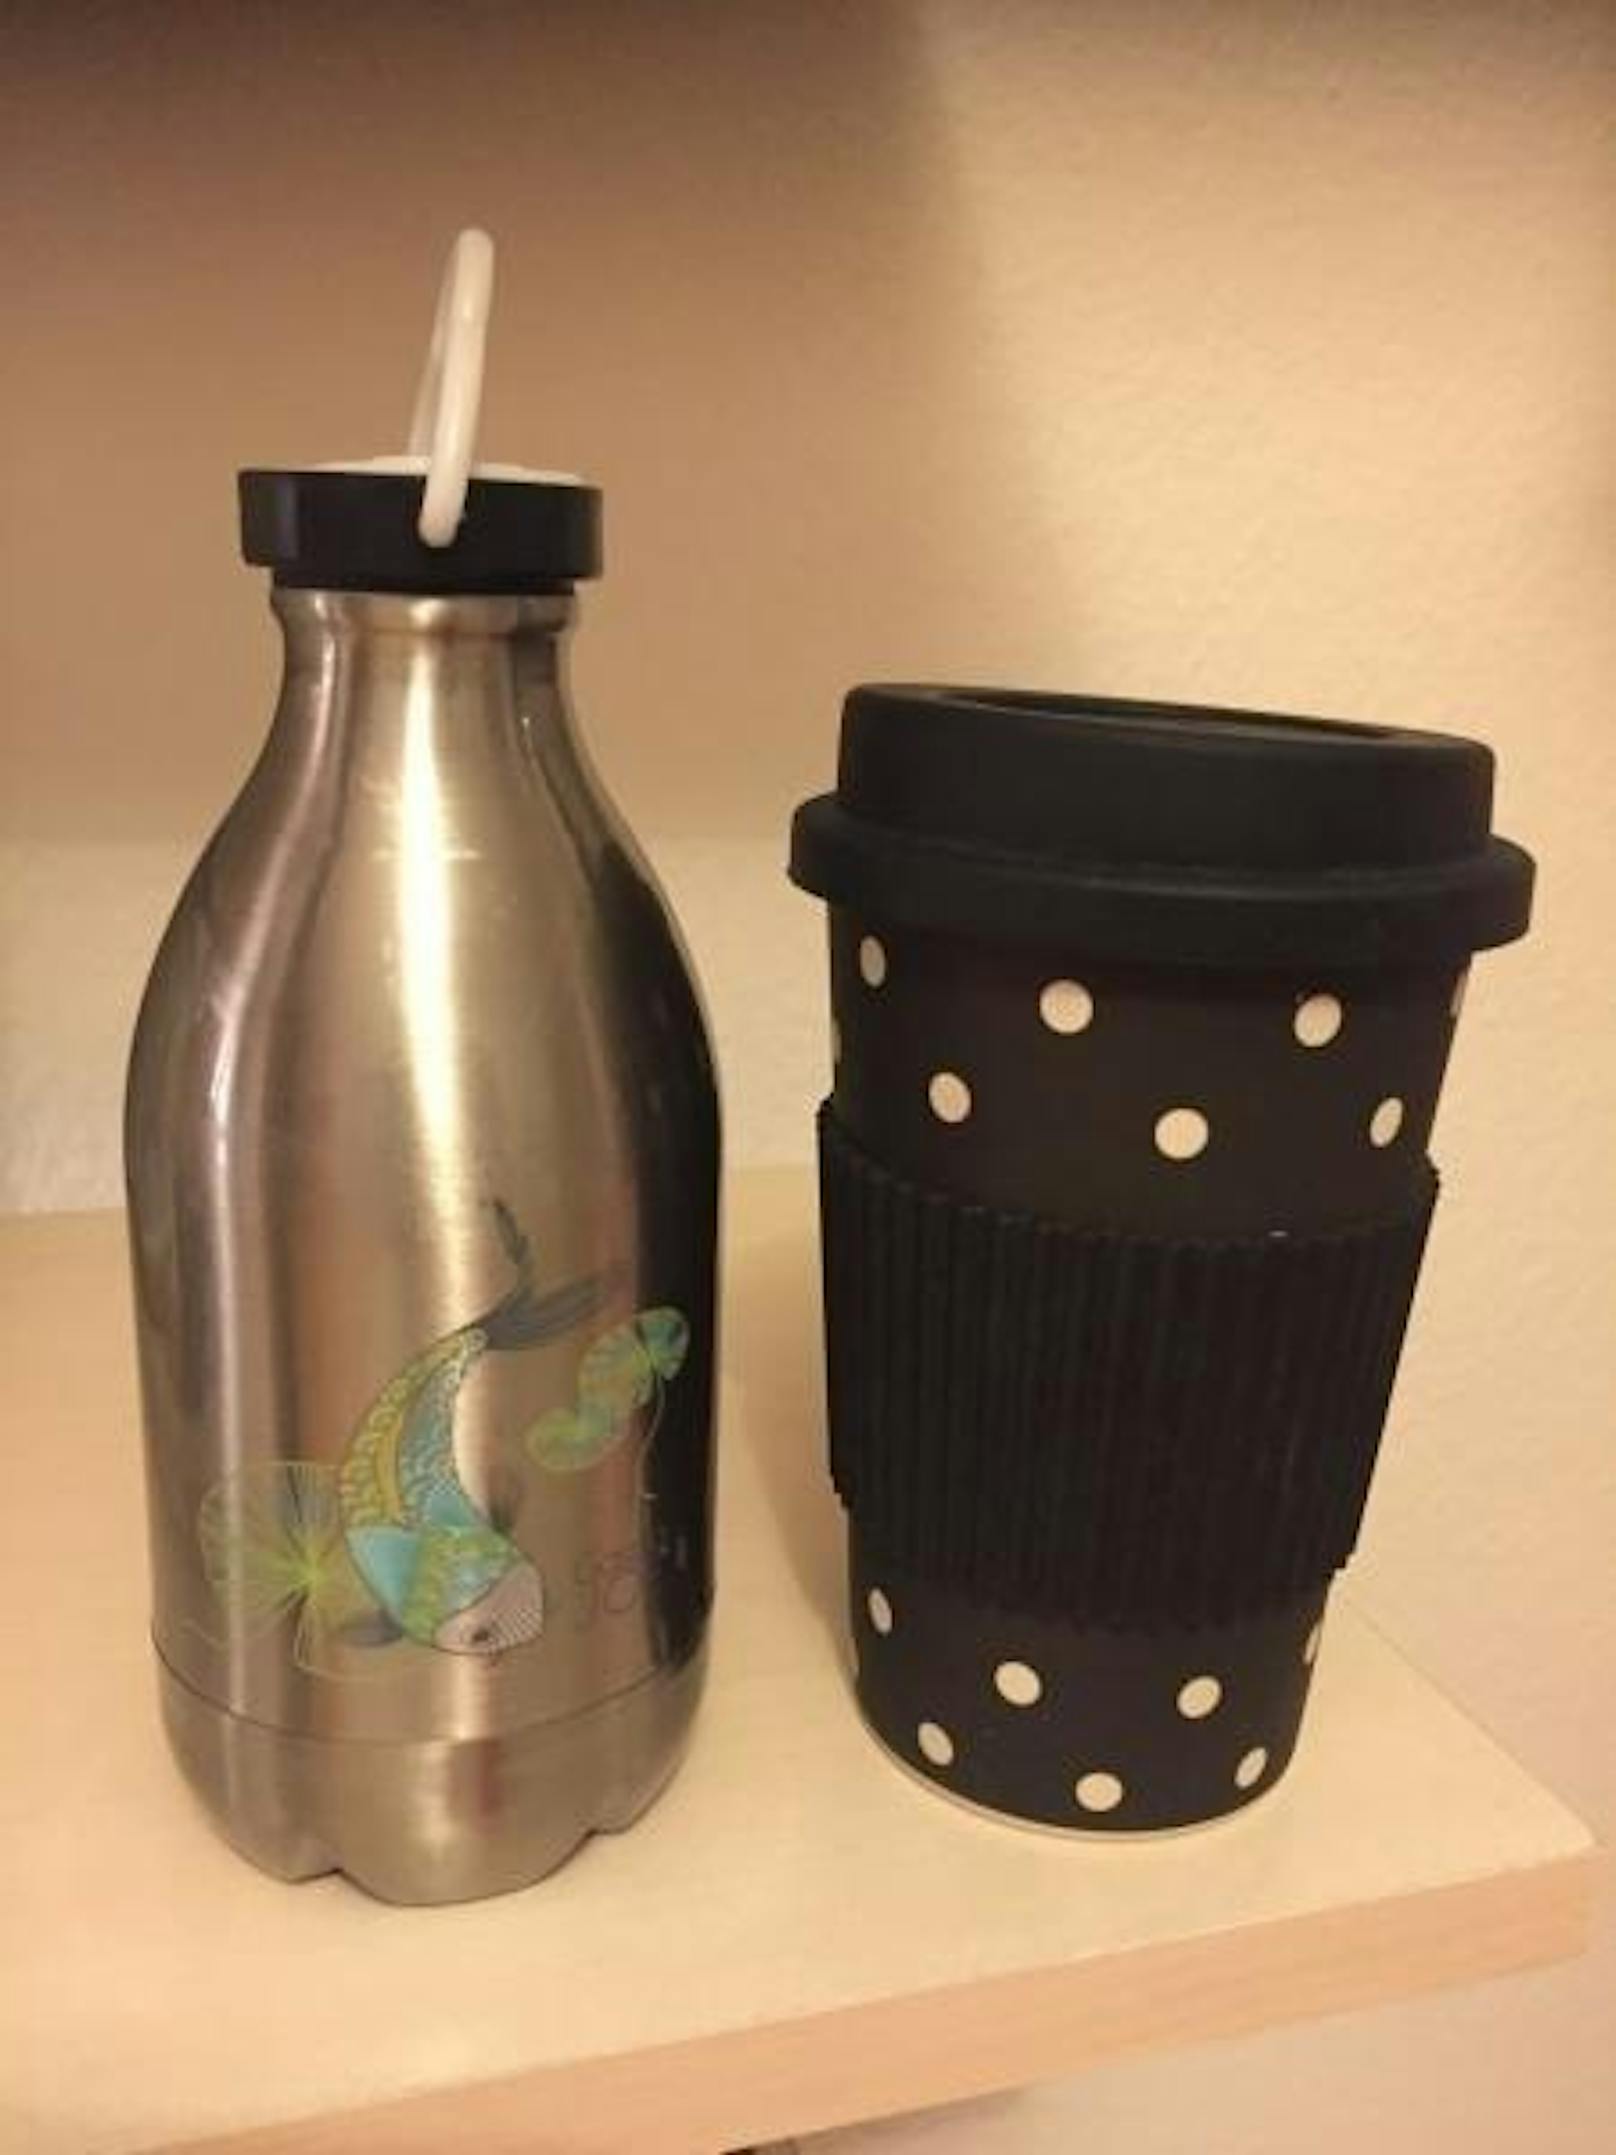 Ein guter Tipp sind auch Wasserflaschen oder wiederverwendbare Coffee-to-go-Becher.